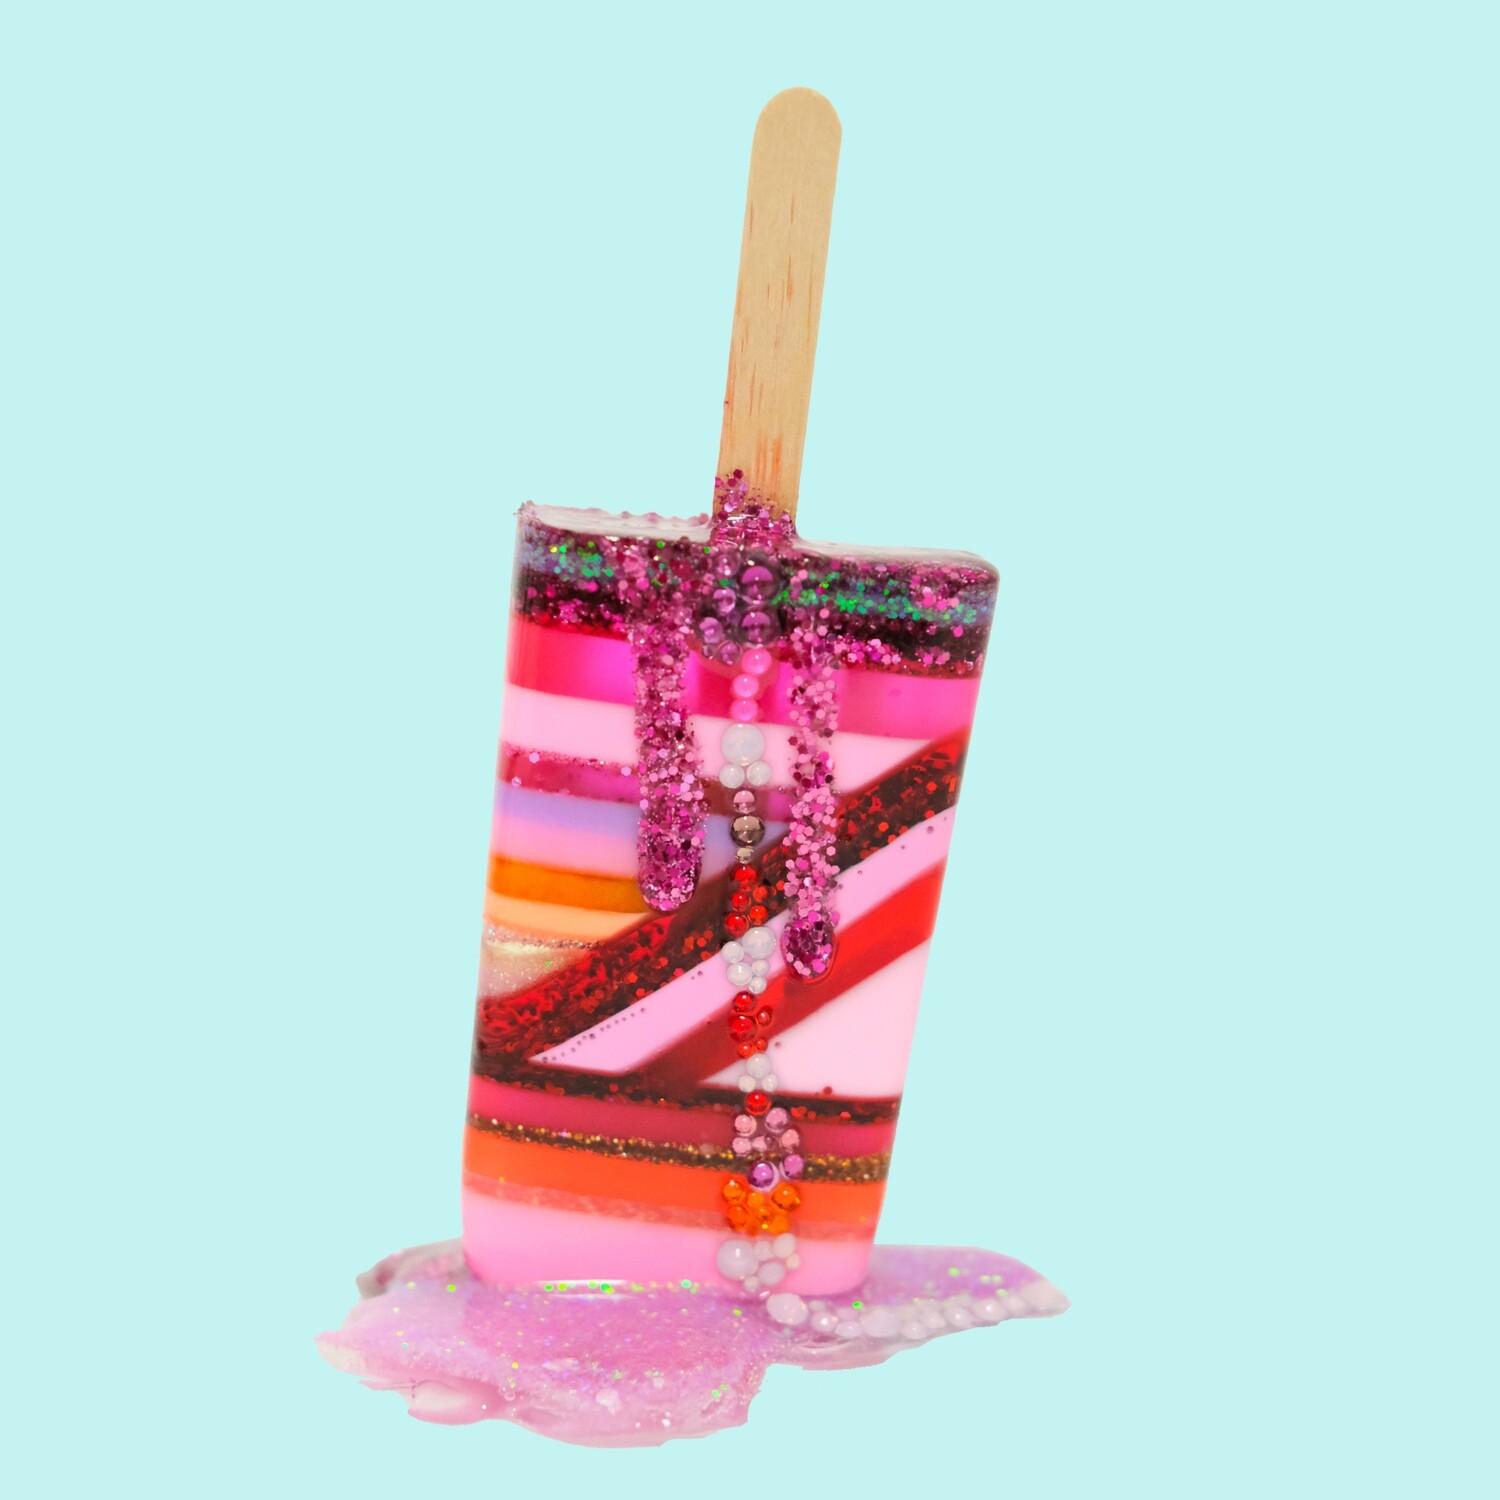 Melting Popsicle Art - Tenderness - Original Melting Pops